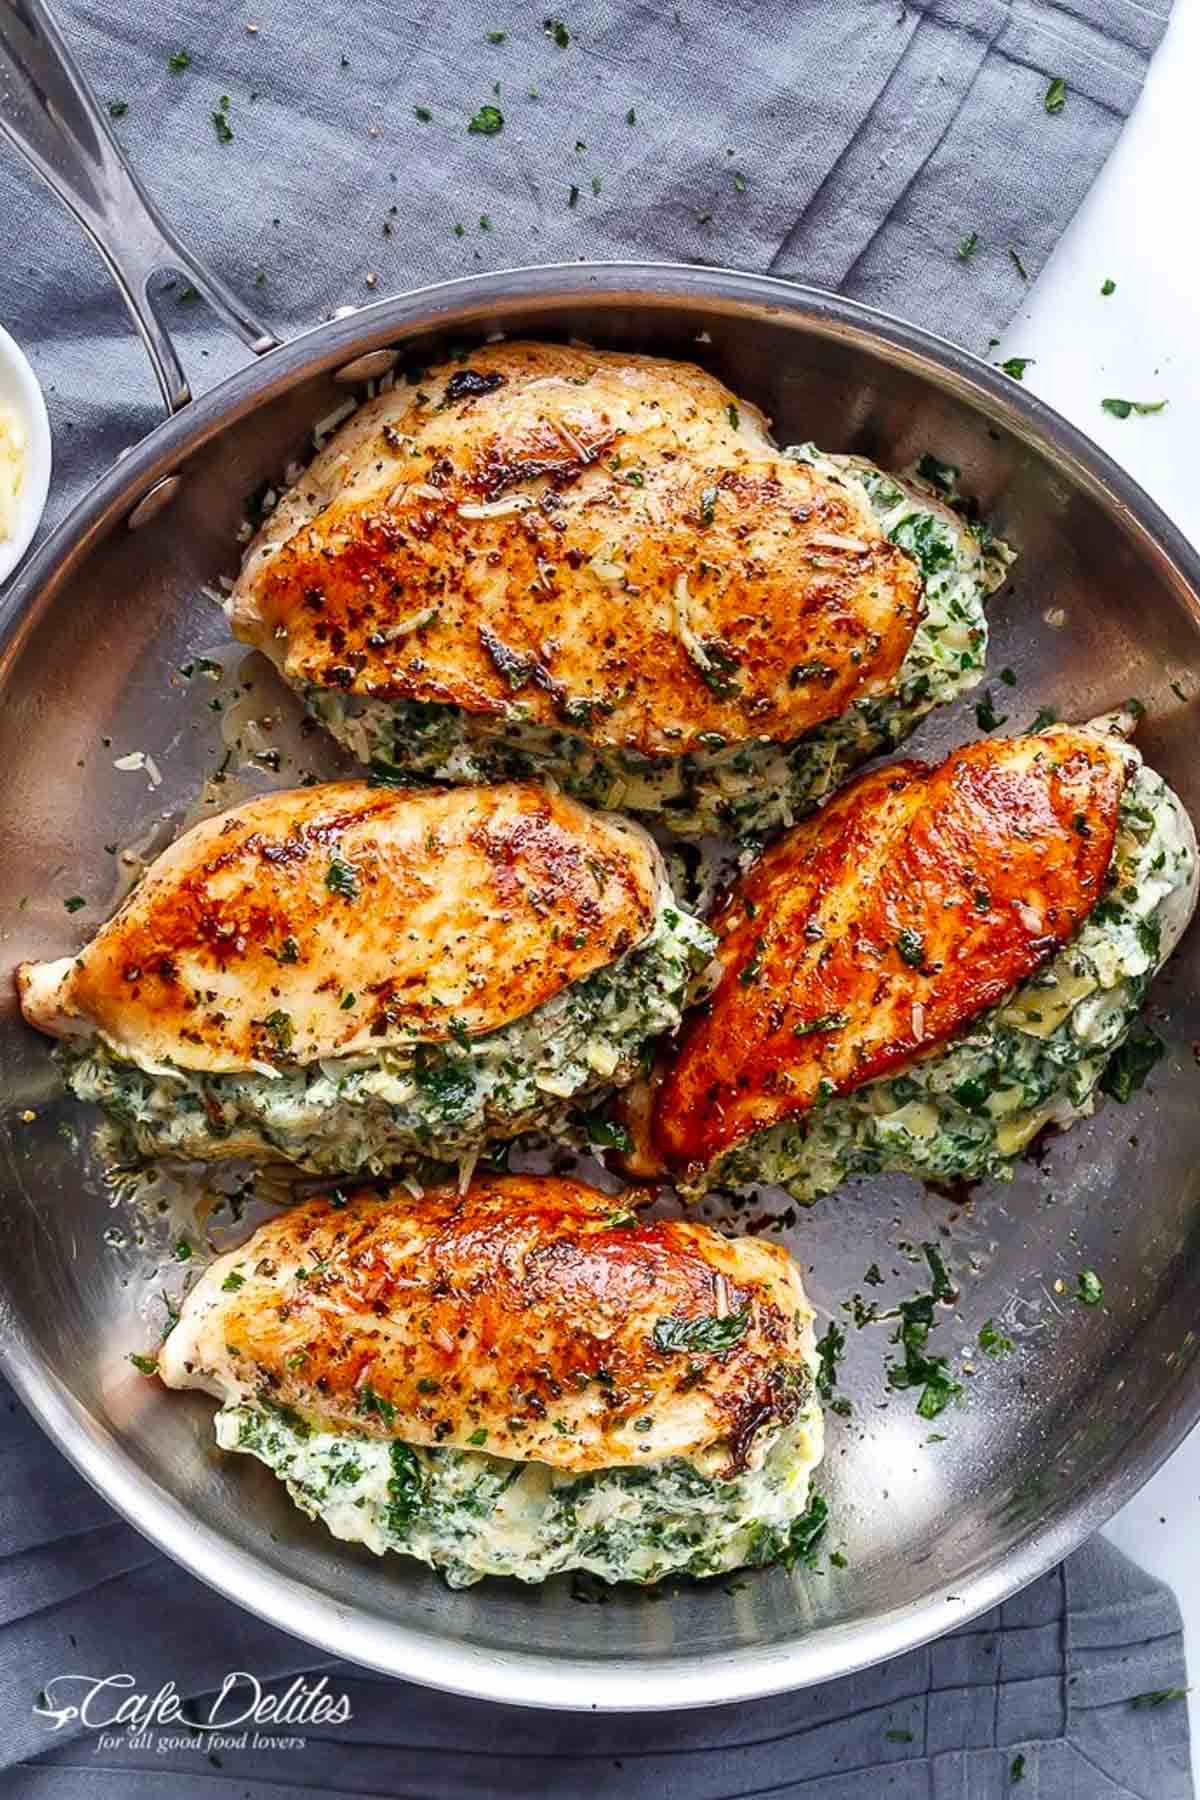 Great Dinner Recipes
 70 Best Chicken Dinner Recipes 2017 Top Easy Chicken